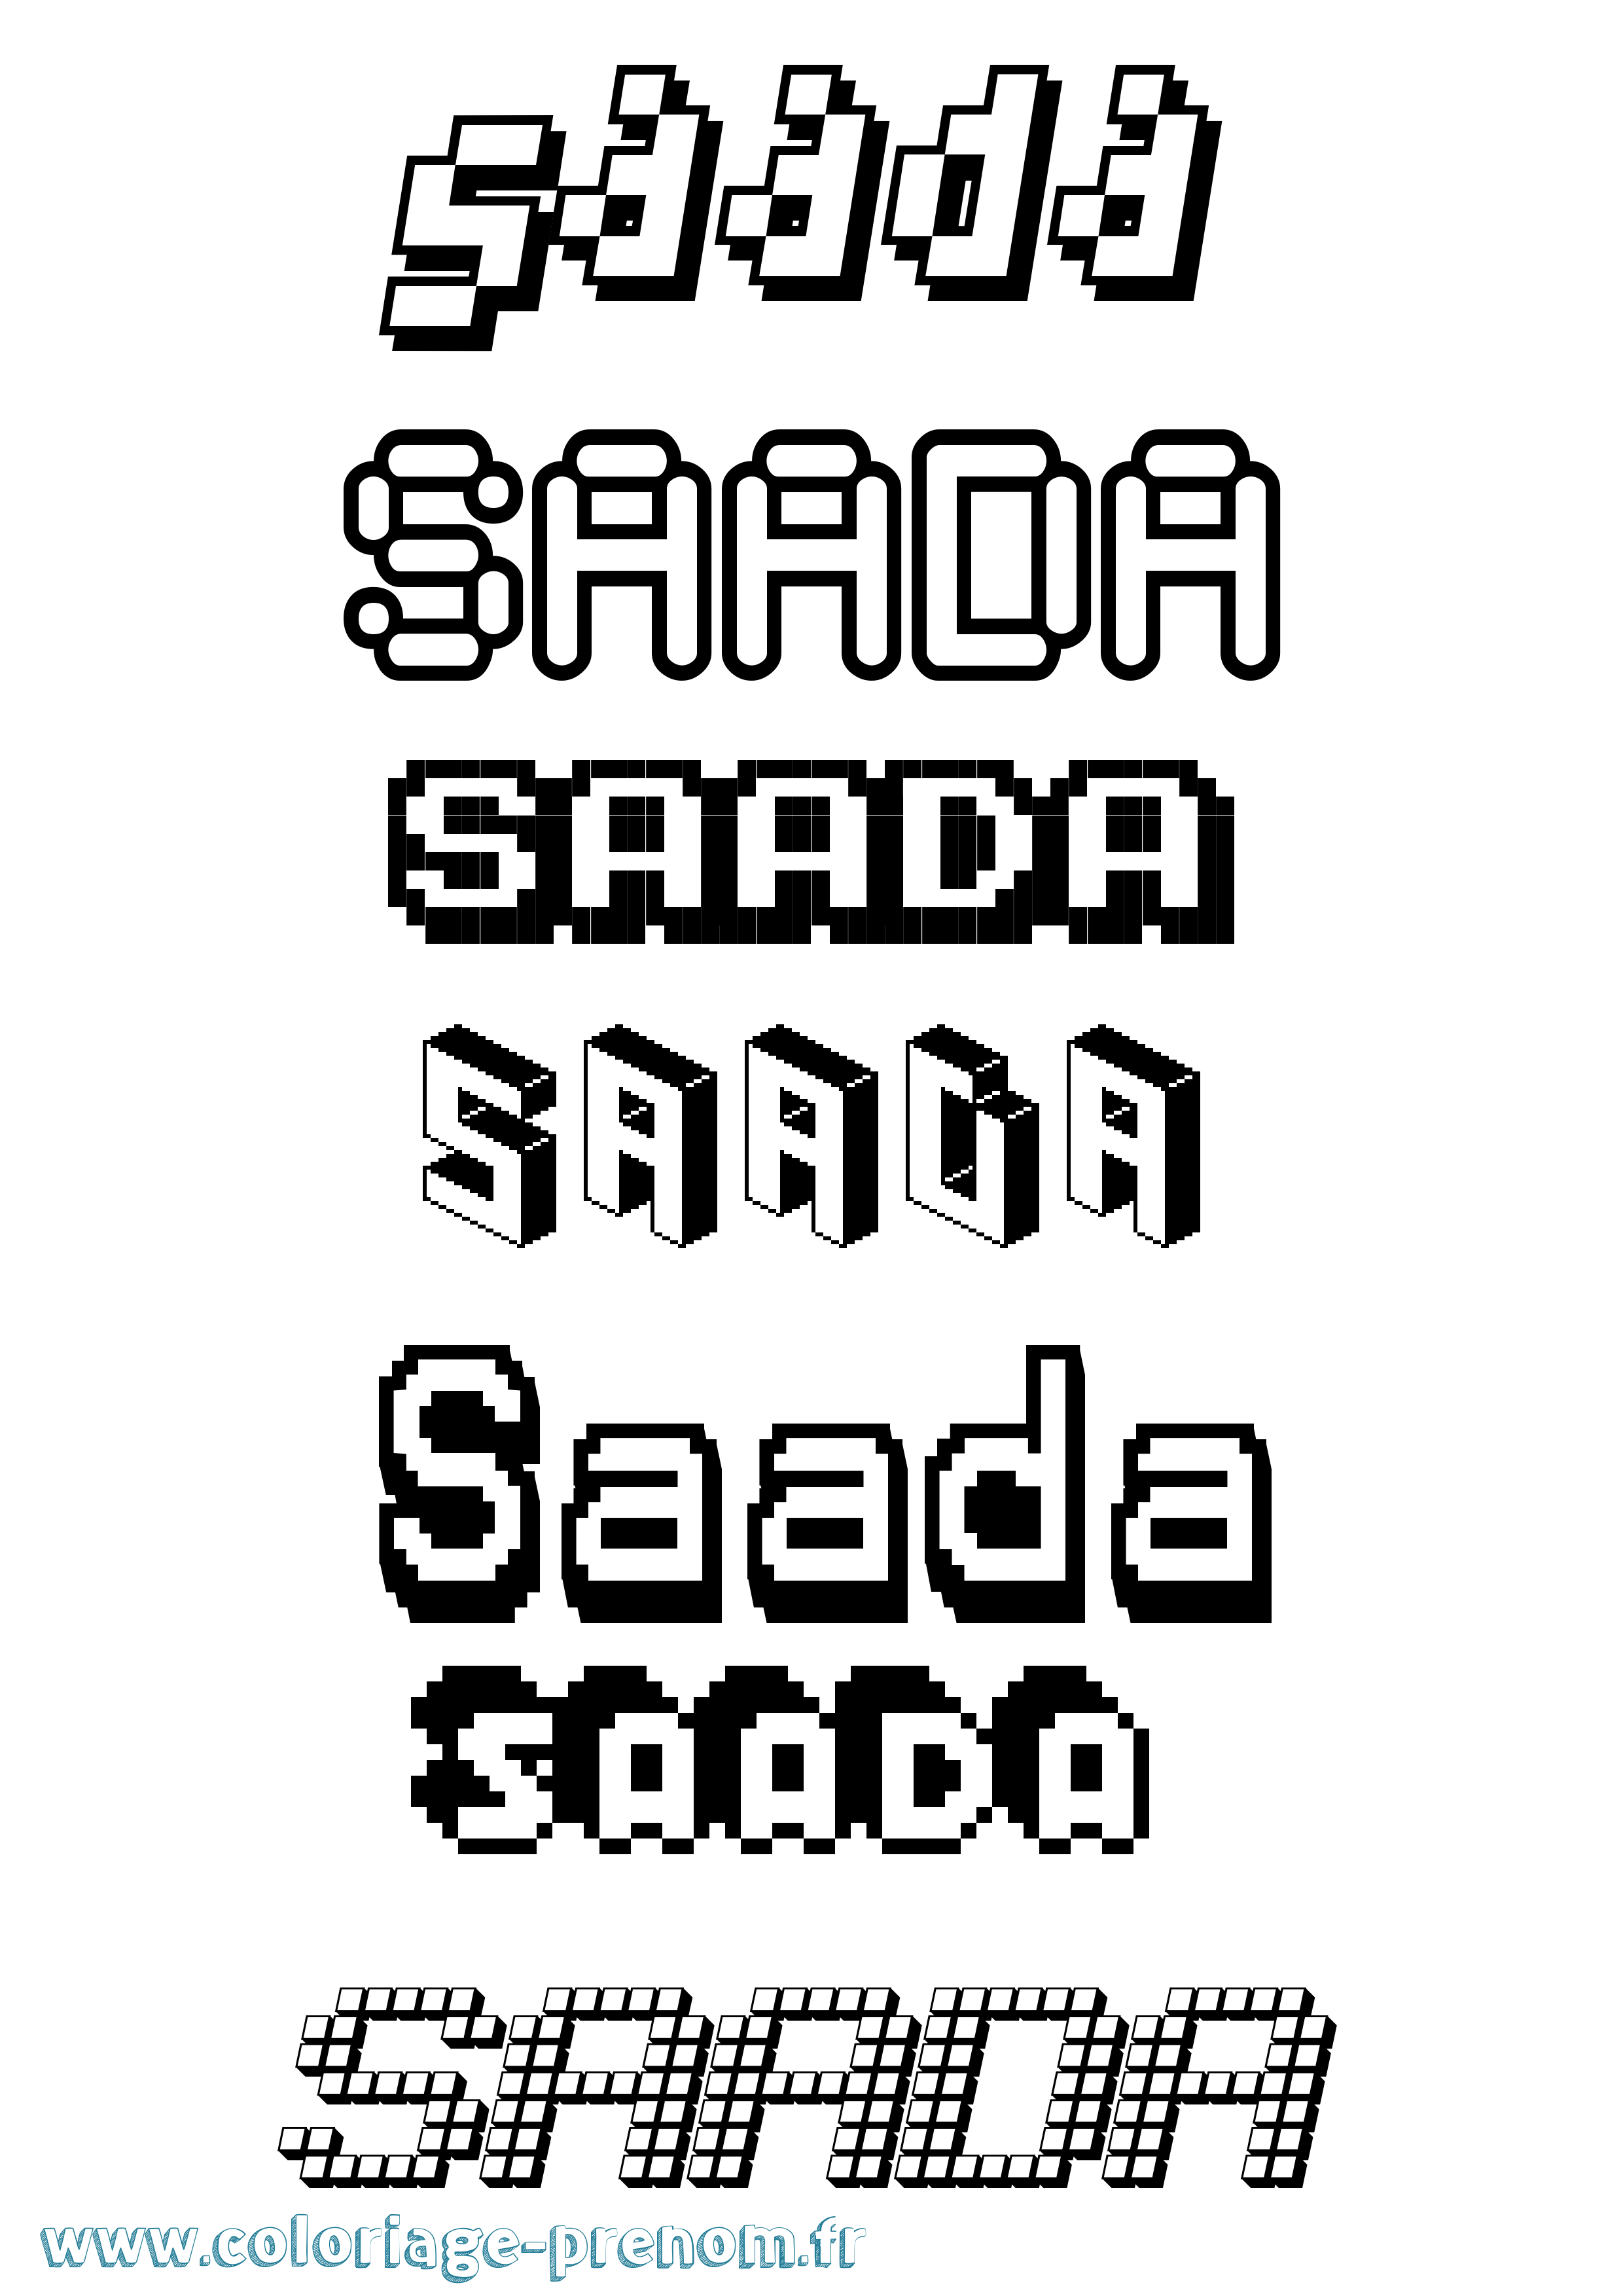 Coloriage prénom Saada Pixel